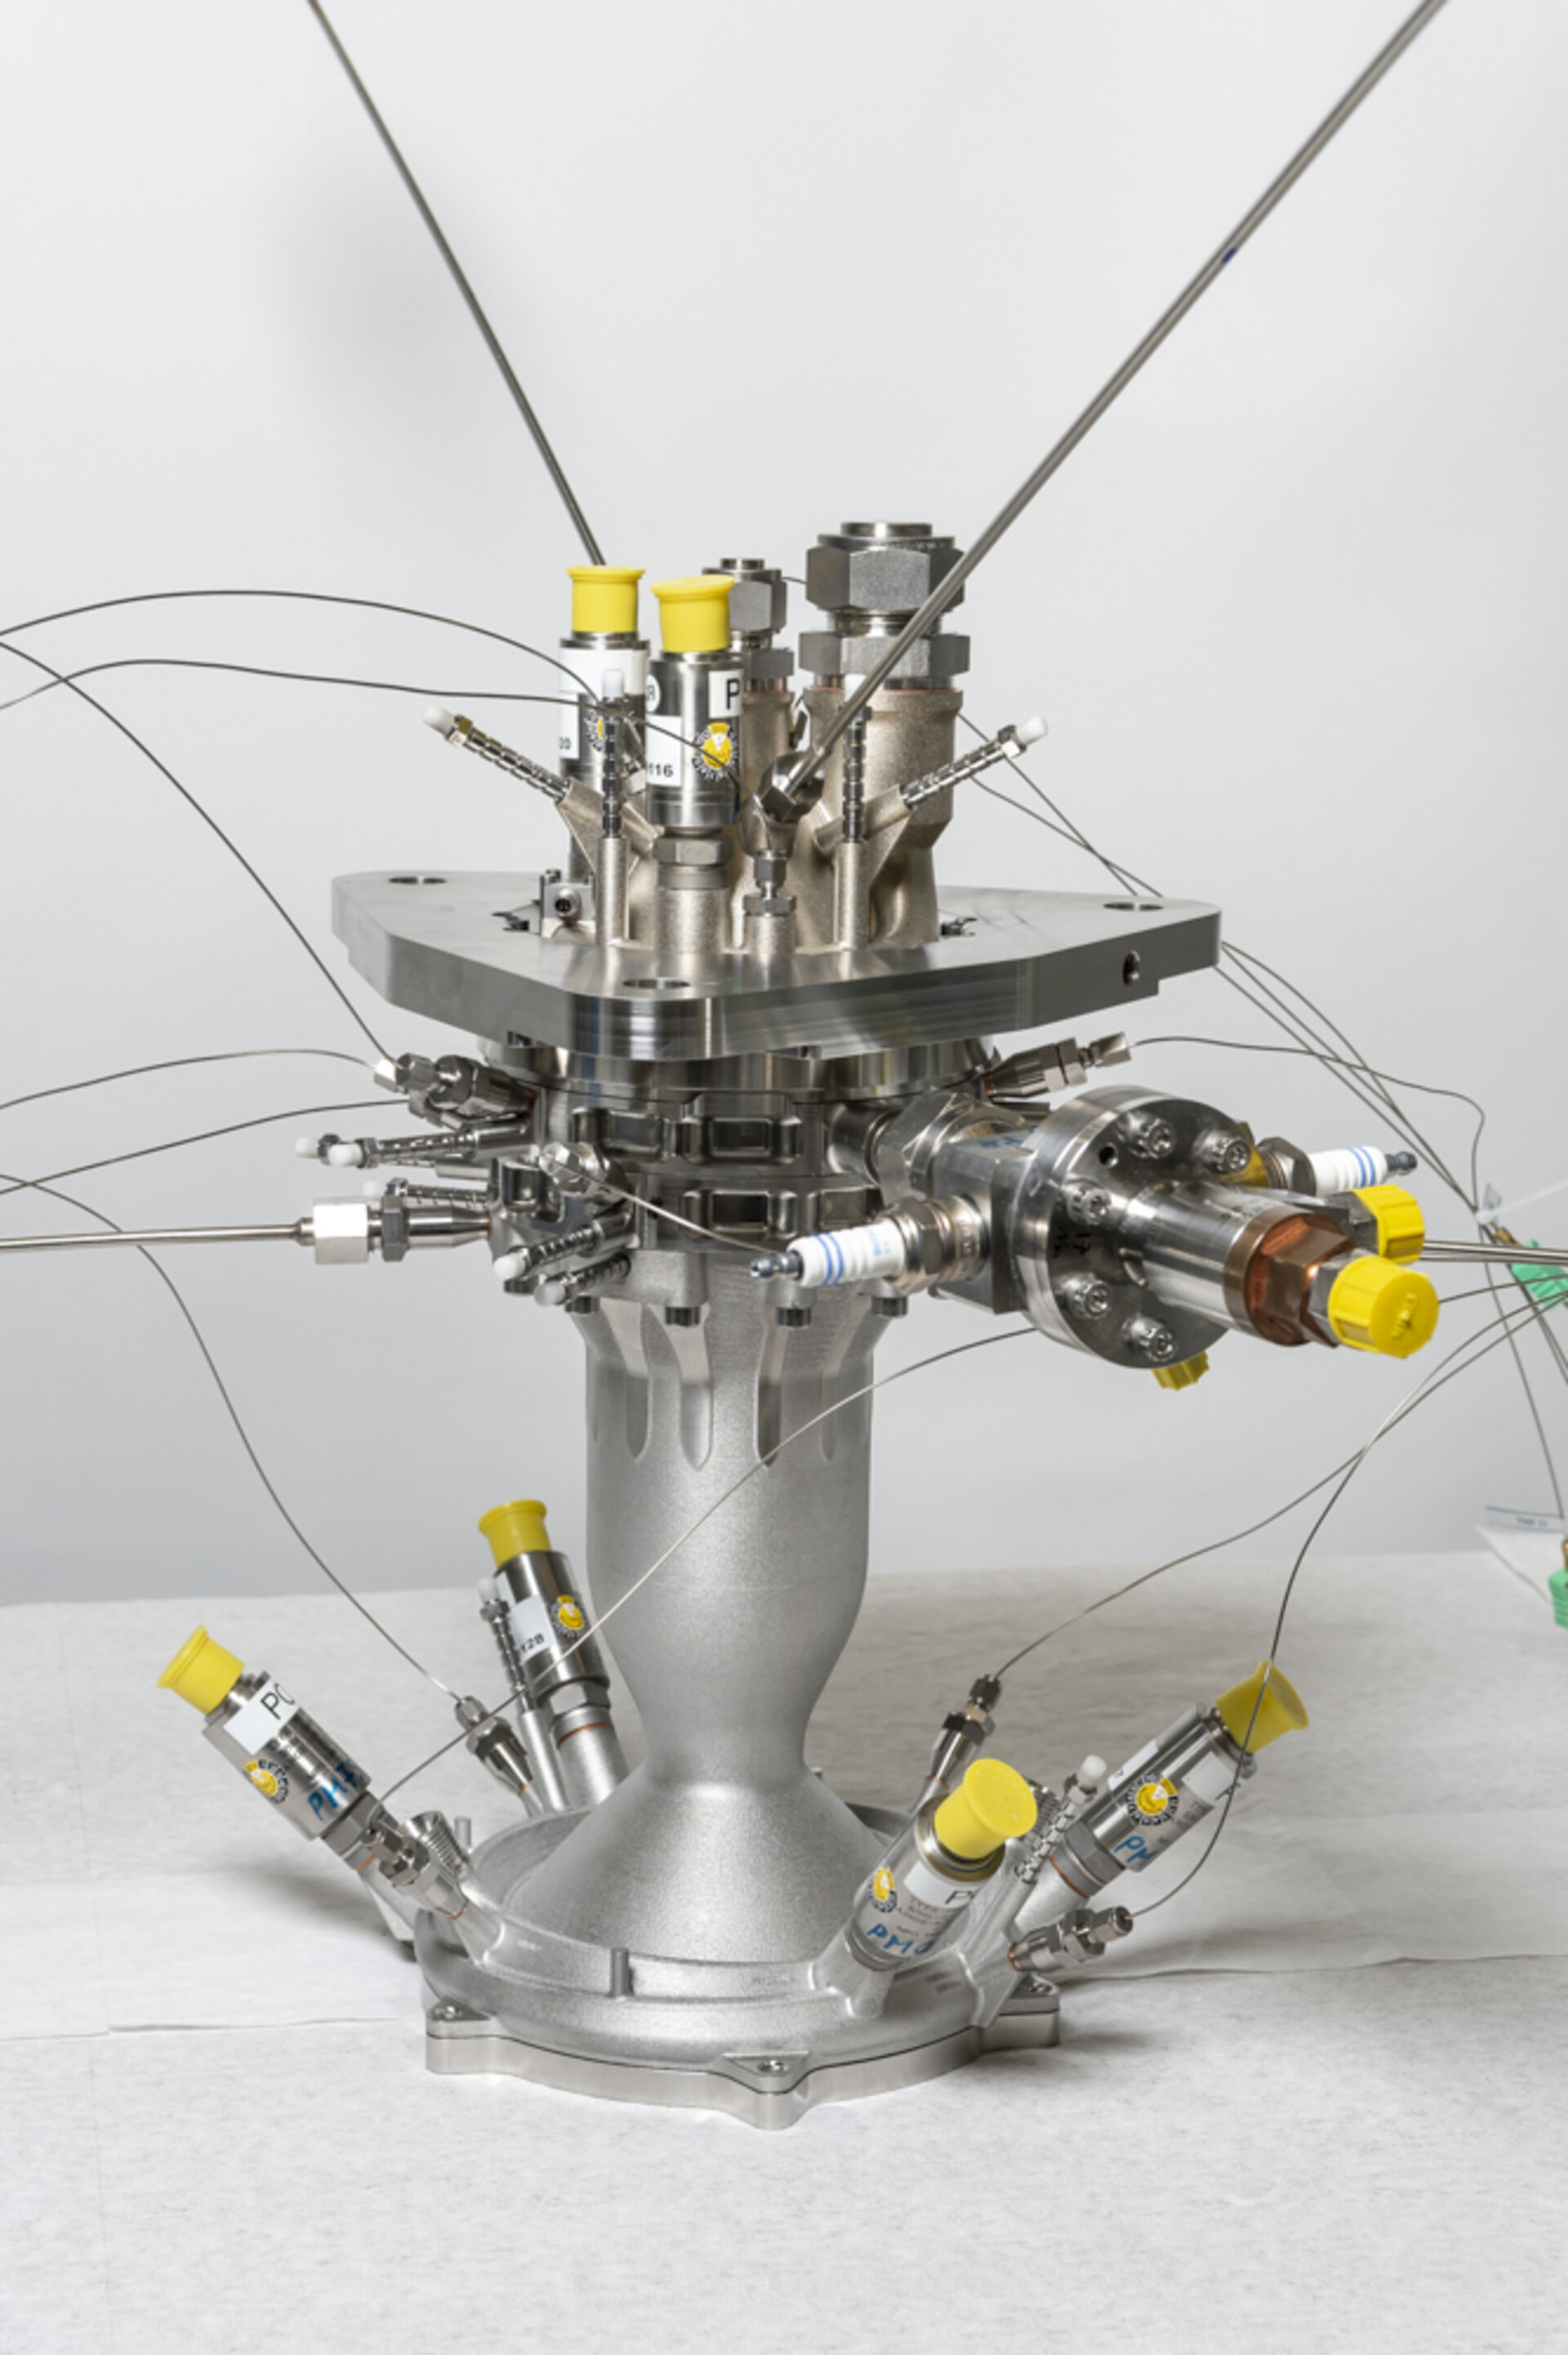 - 3D-printed storable-propellant rocket engine design tested